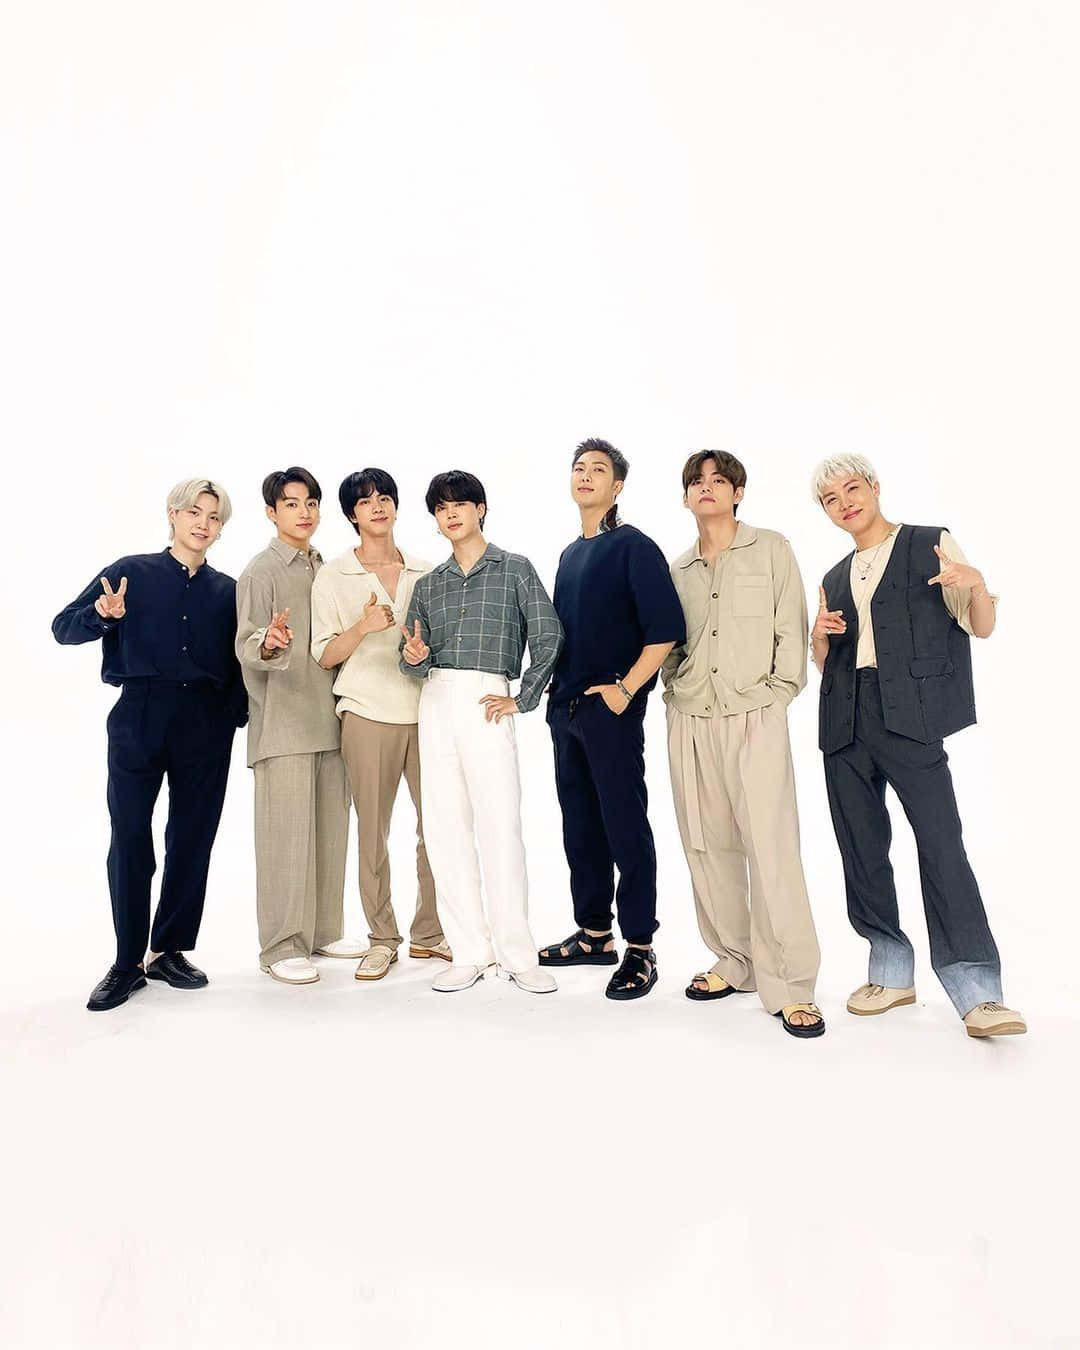 BTS posing during an endorsement event Wallpaper